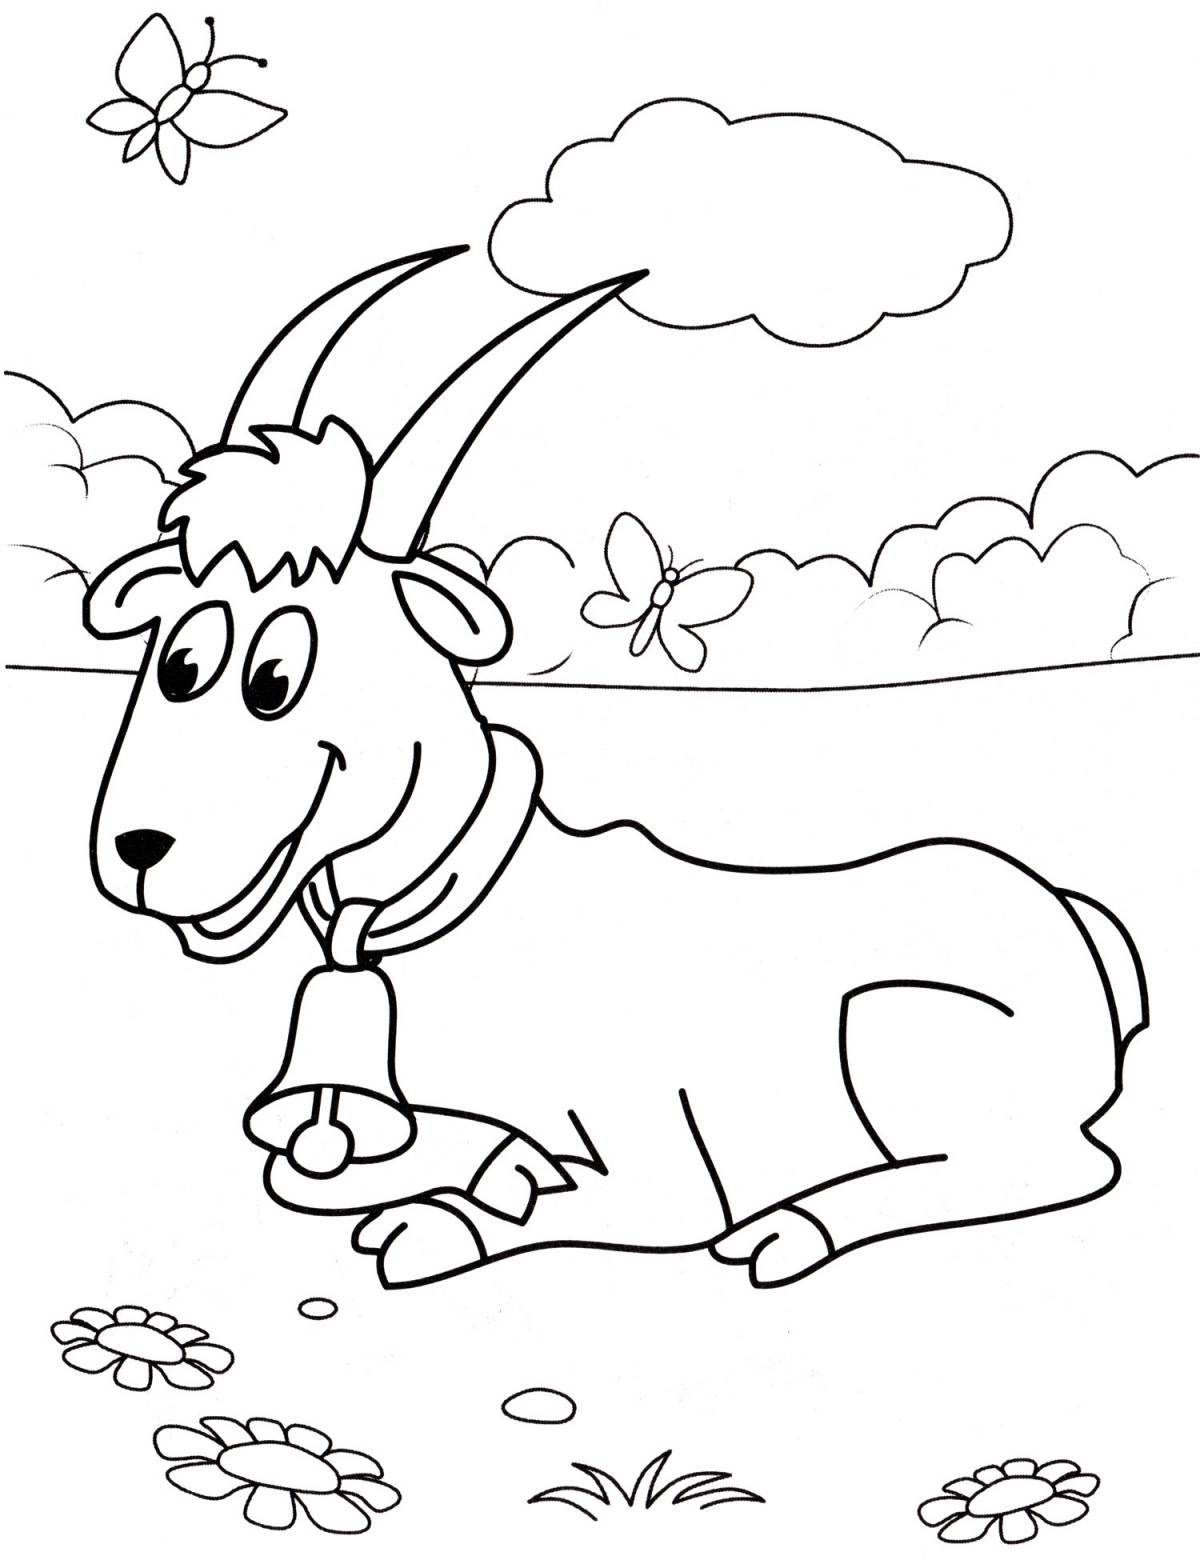 Праздничная раскраска козла для детей